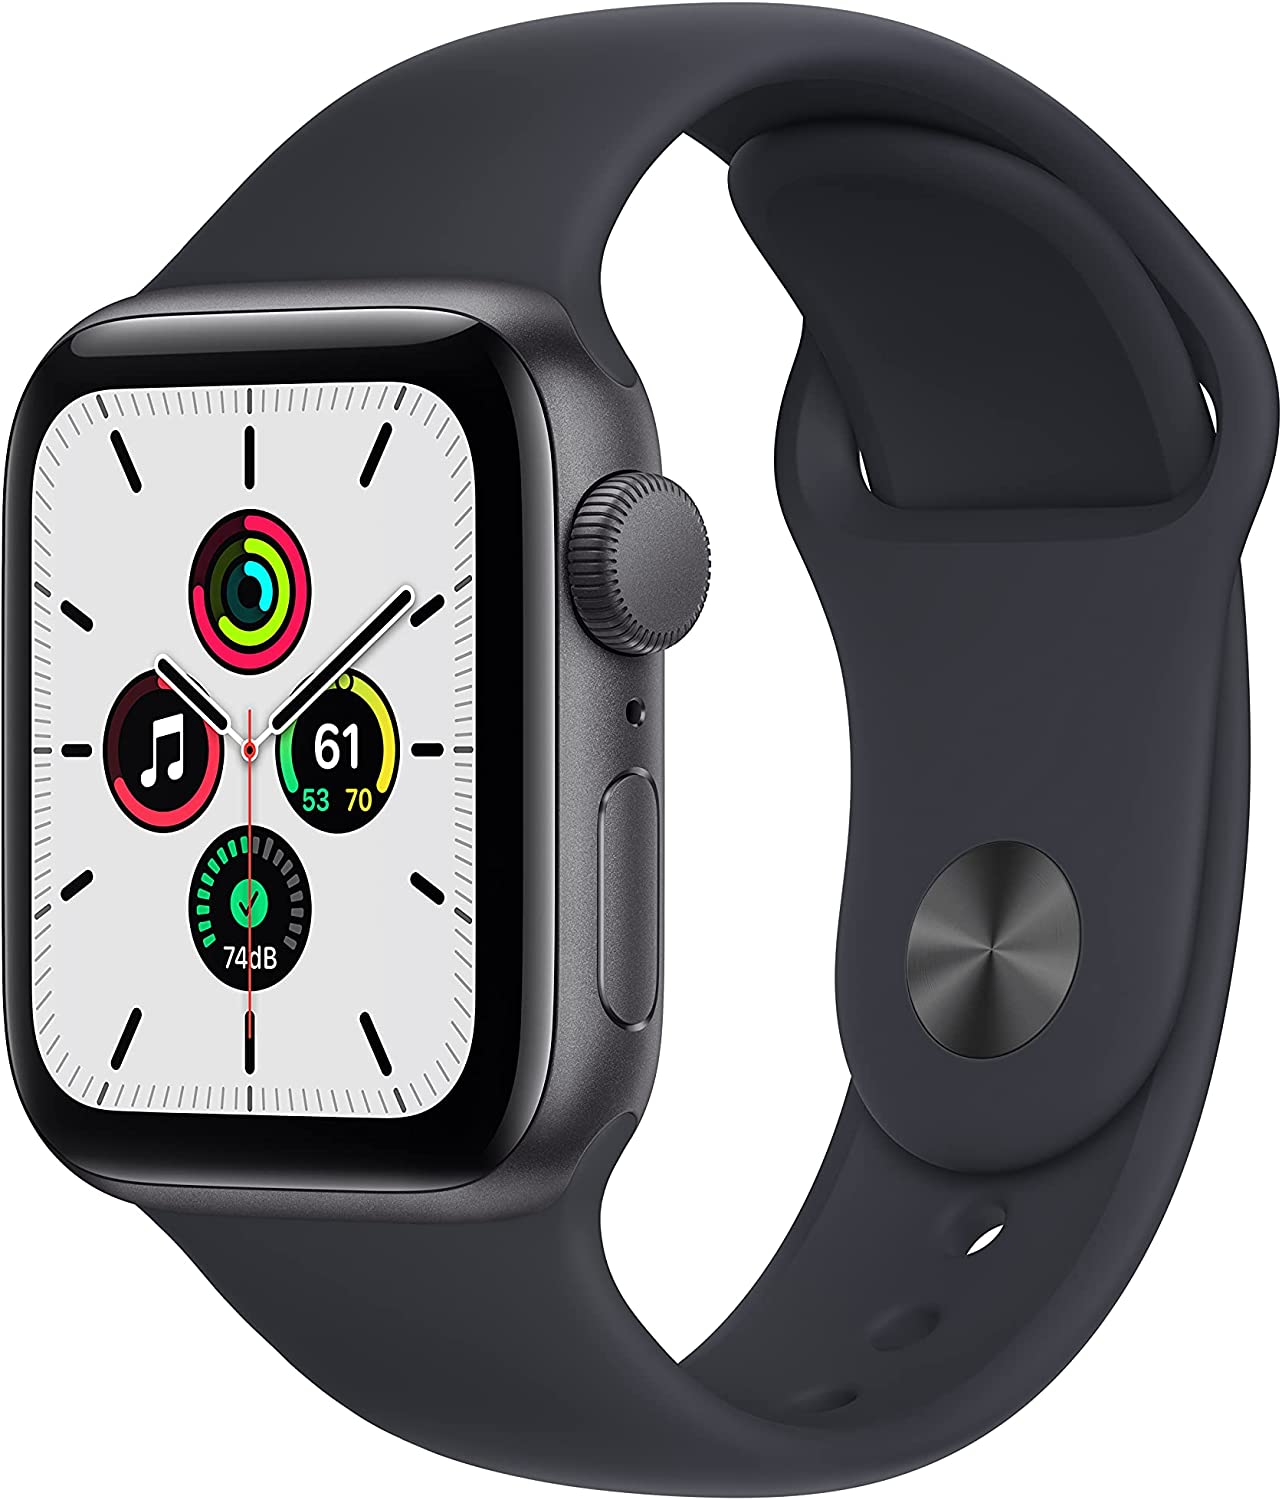 Apple Watch Se Render